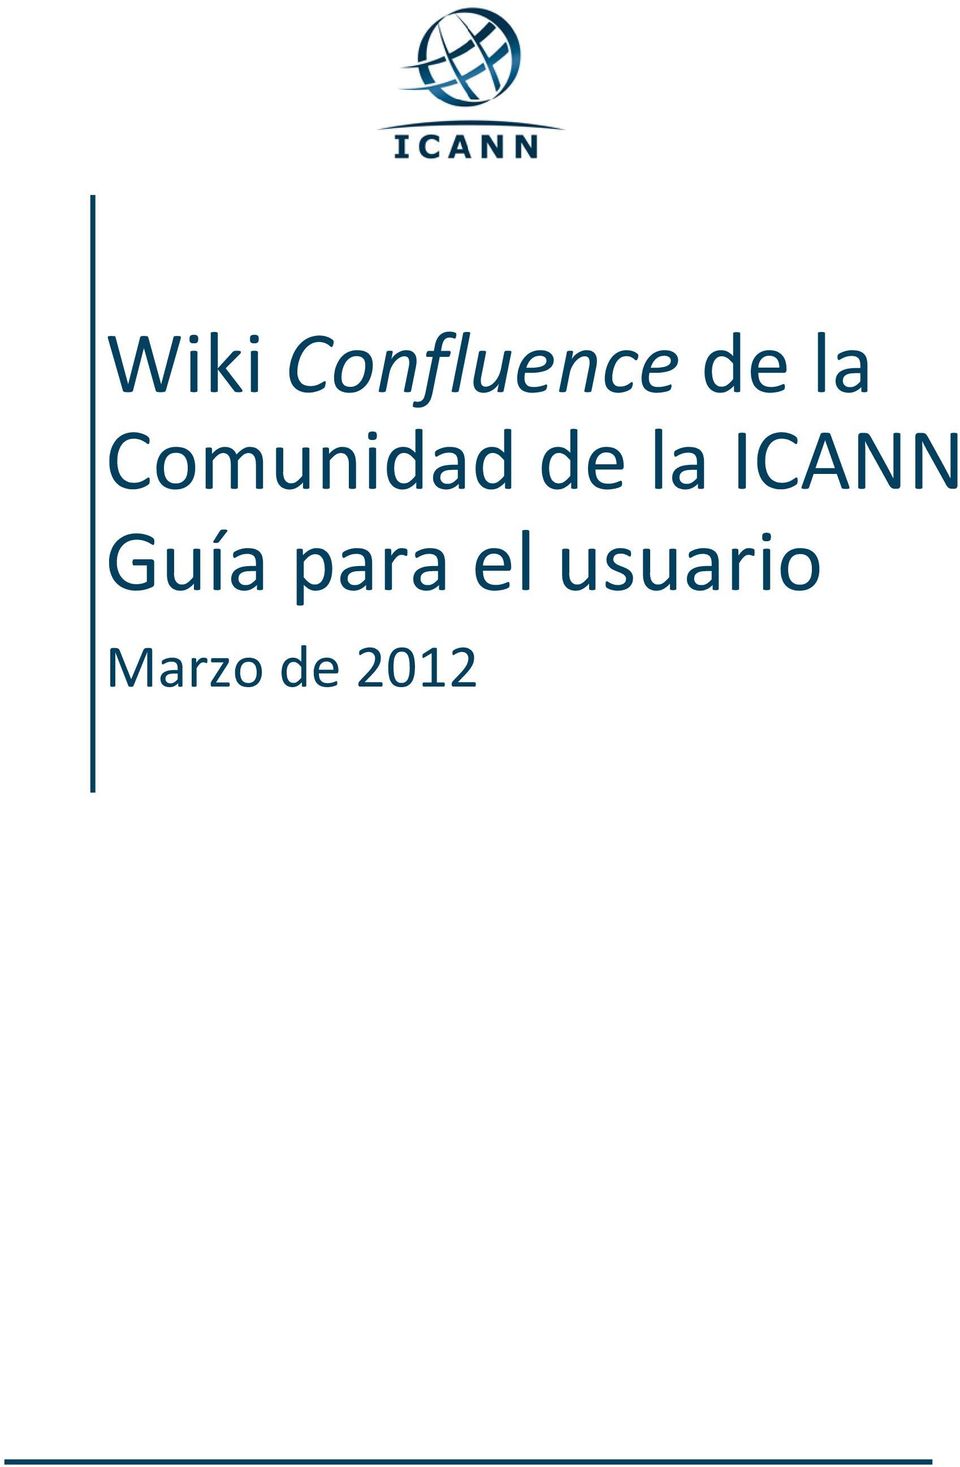 ICANN Guía para el